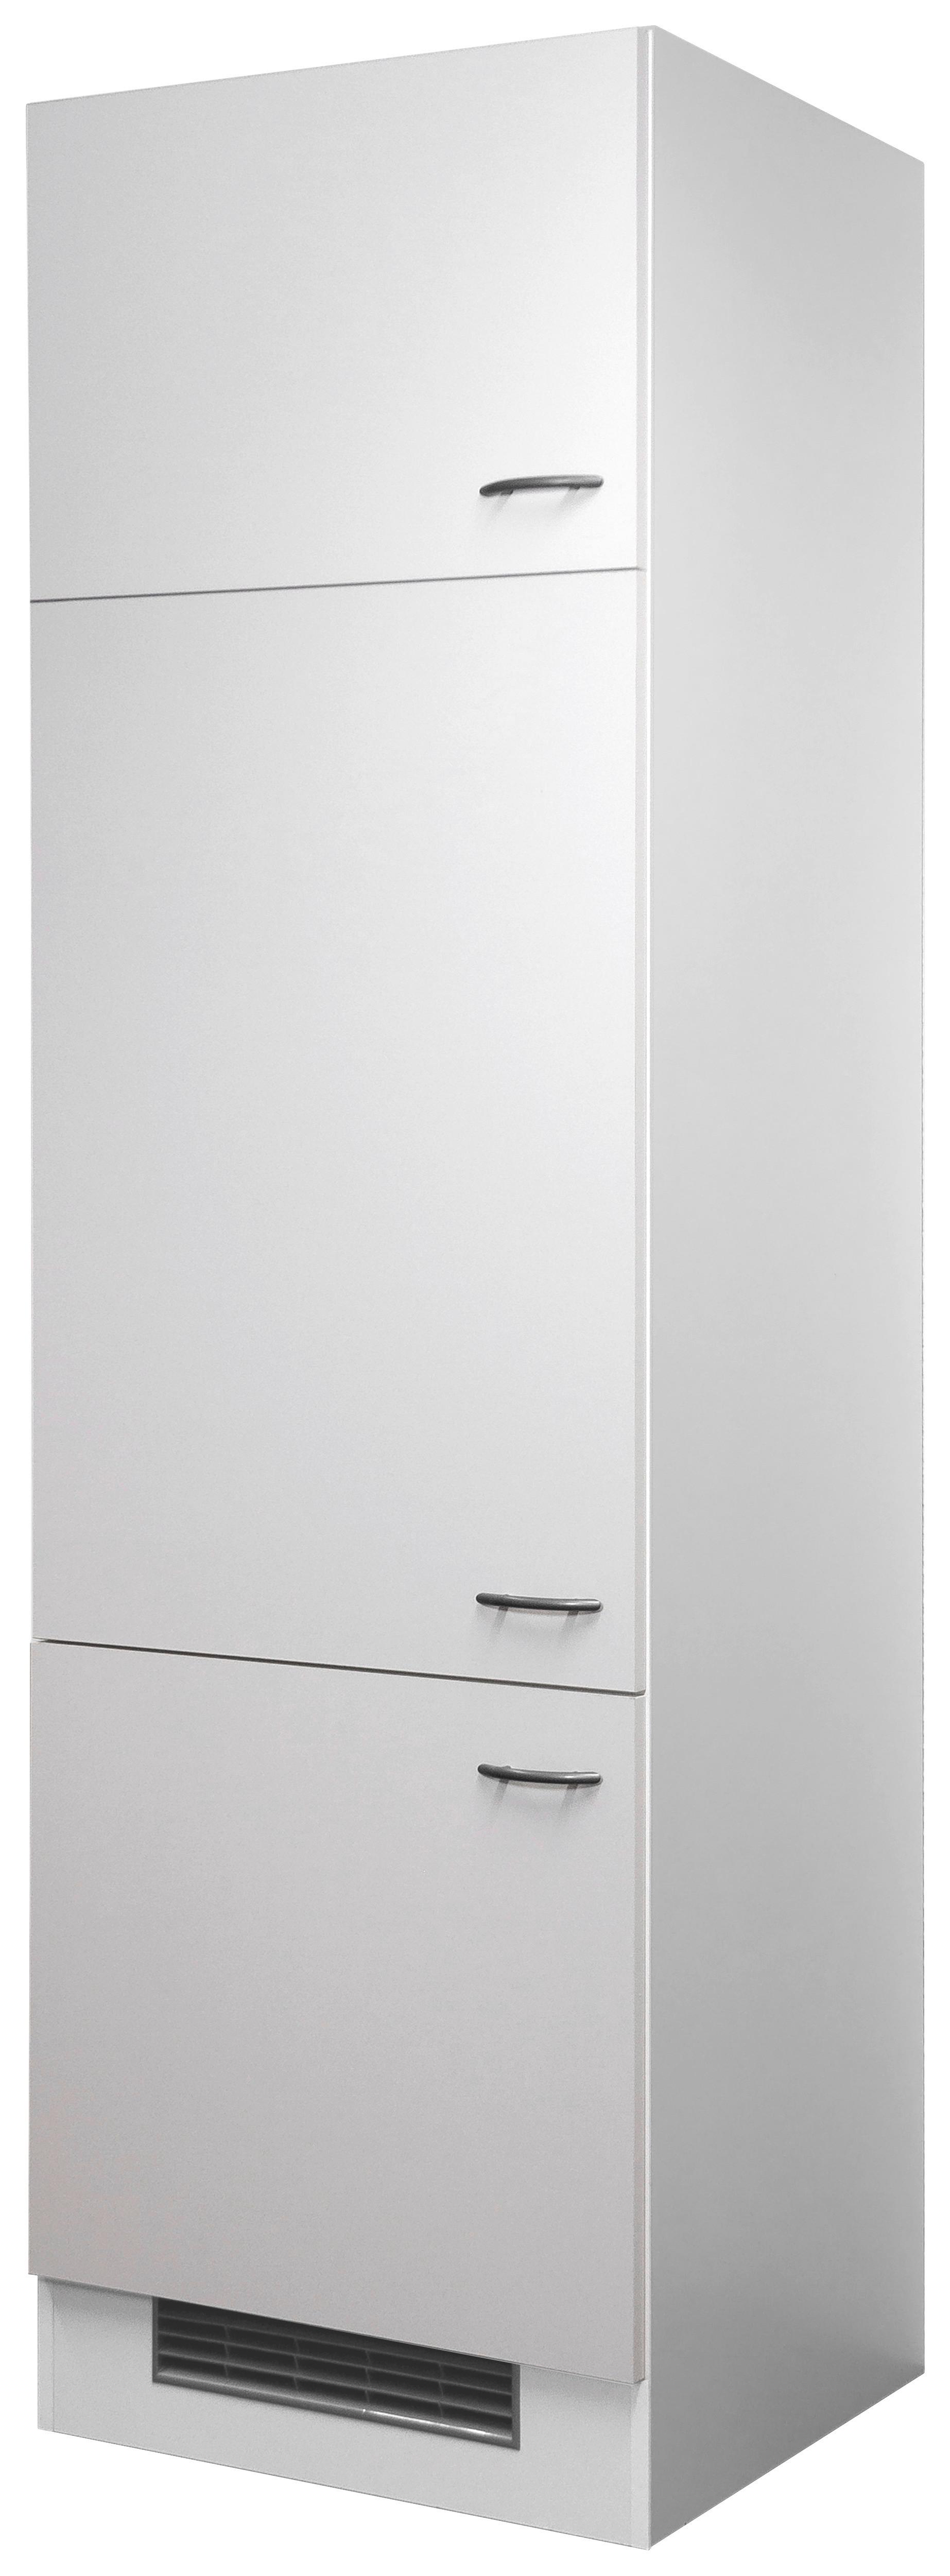 Umbauschrank für Kühlschrank mit 88 cm Nischenhöhe | Umbauschränke